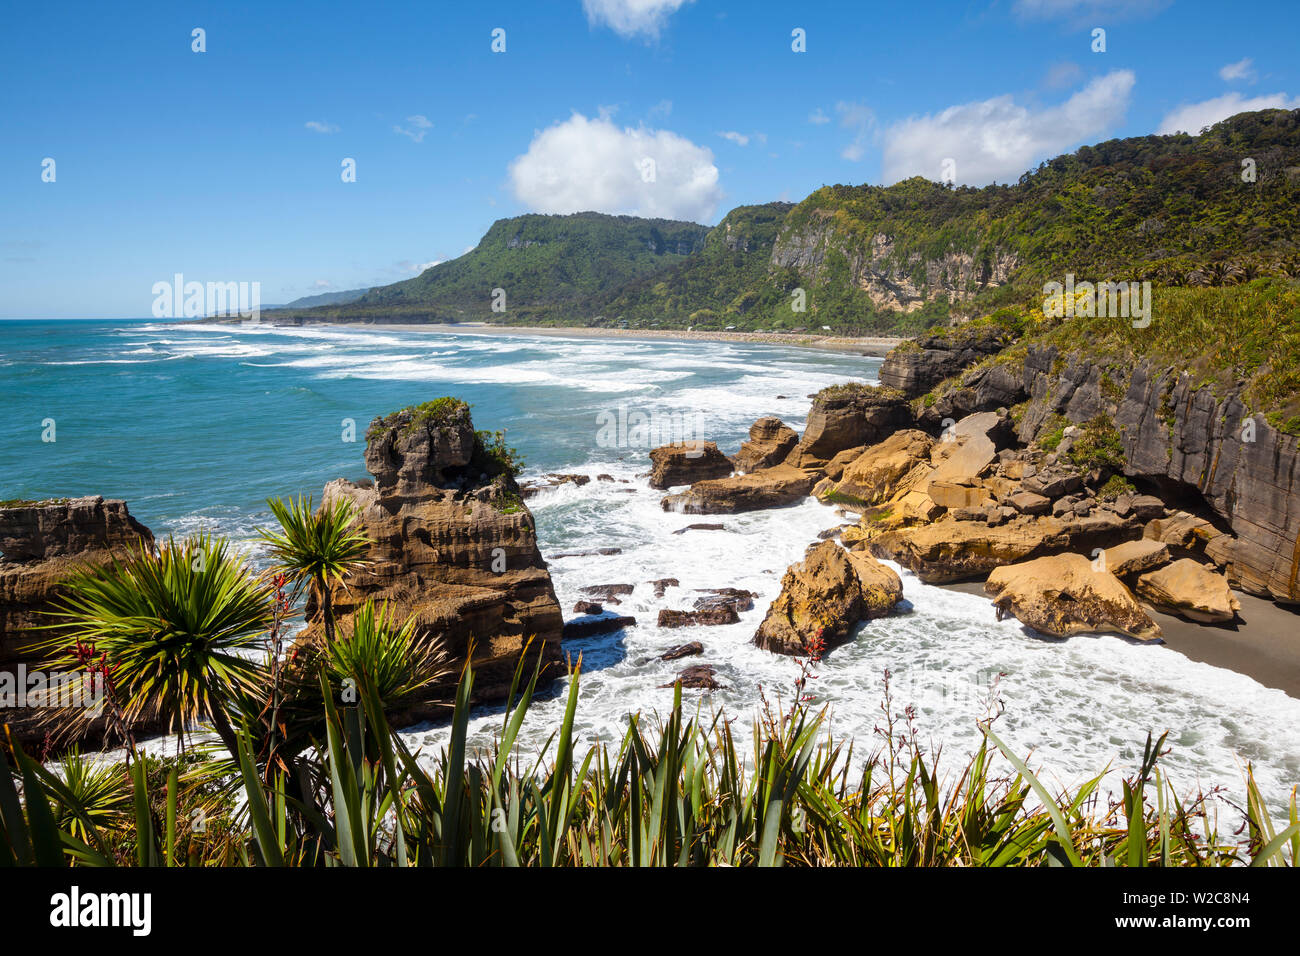 The coast at Punakaiki, West Coast, South Island, New Zealand Stock Photo